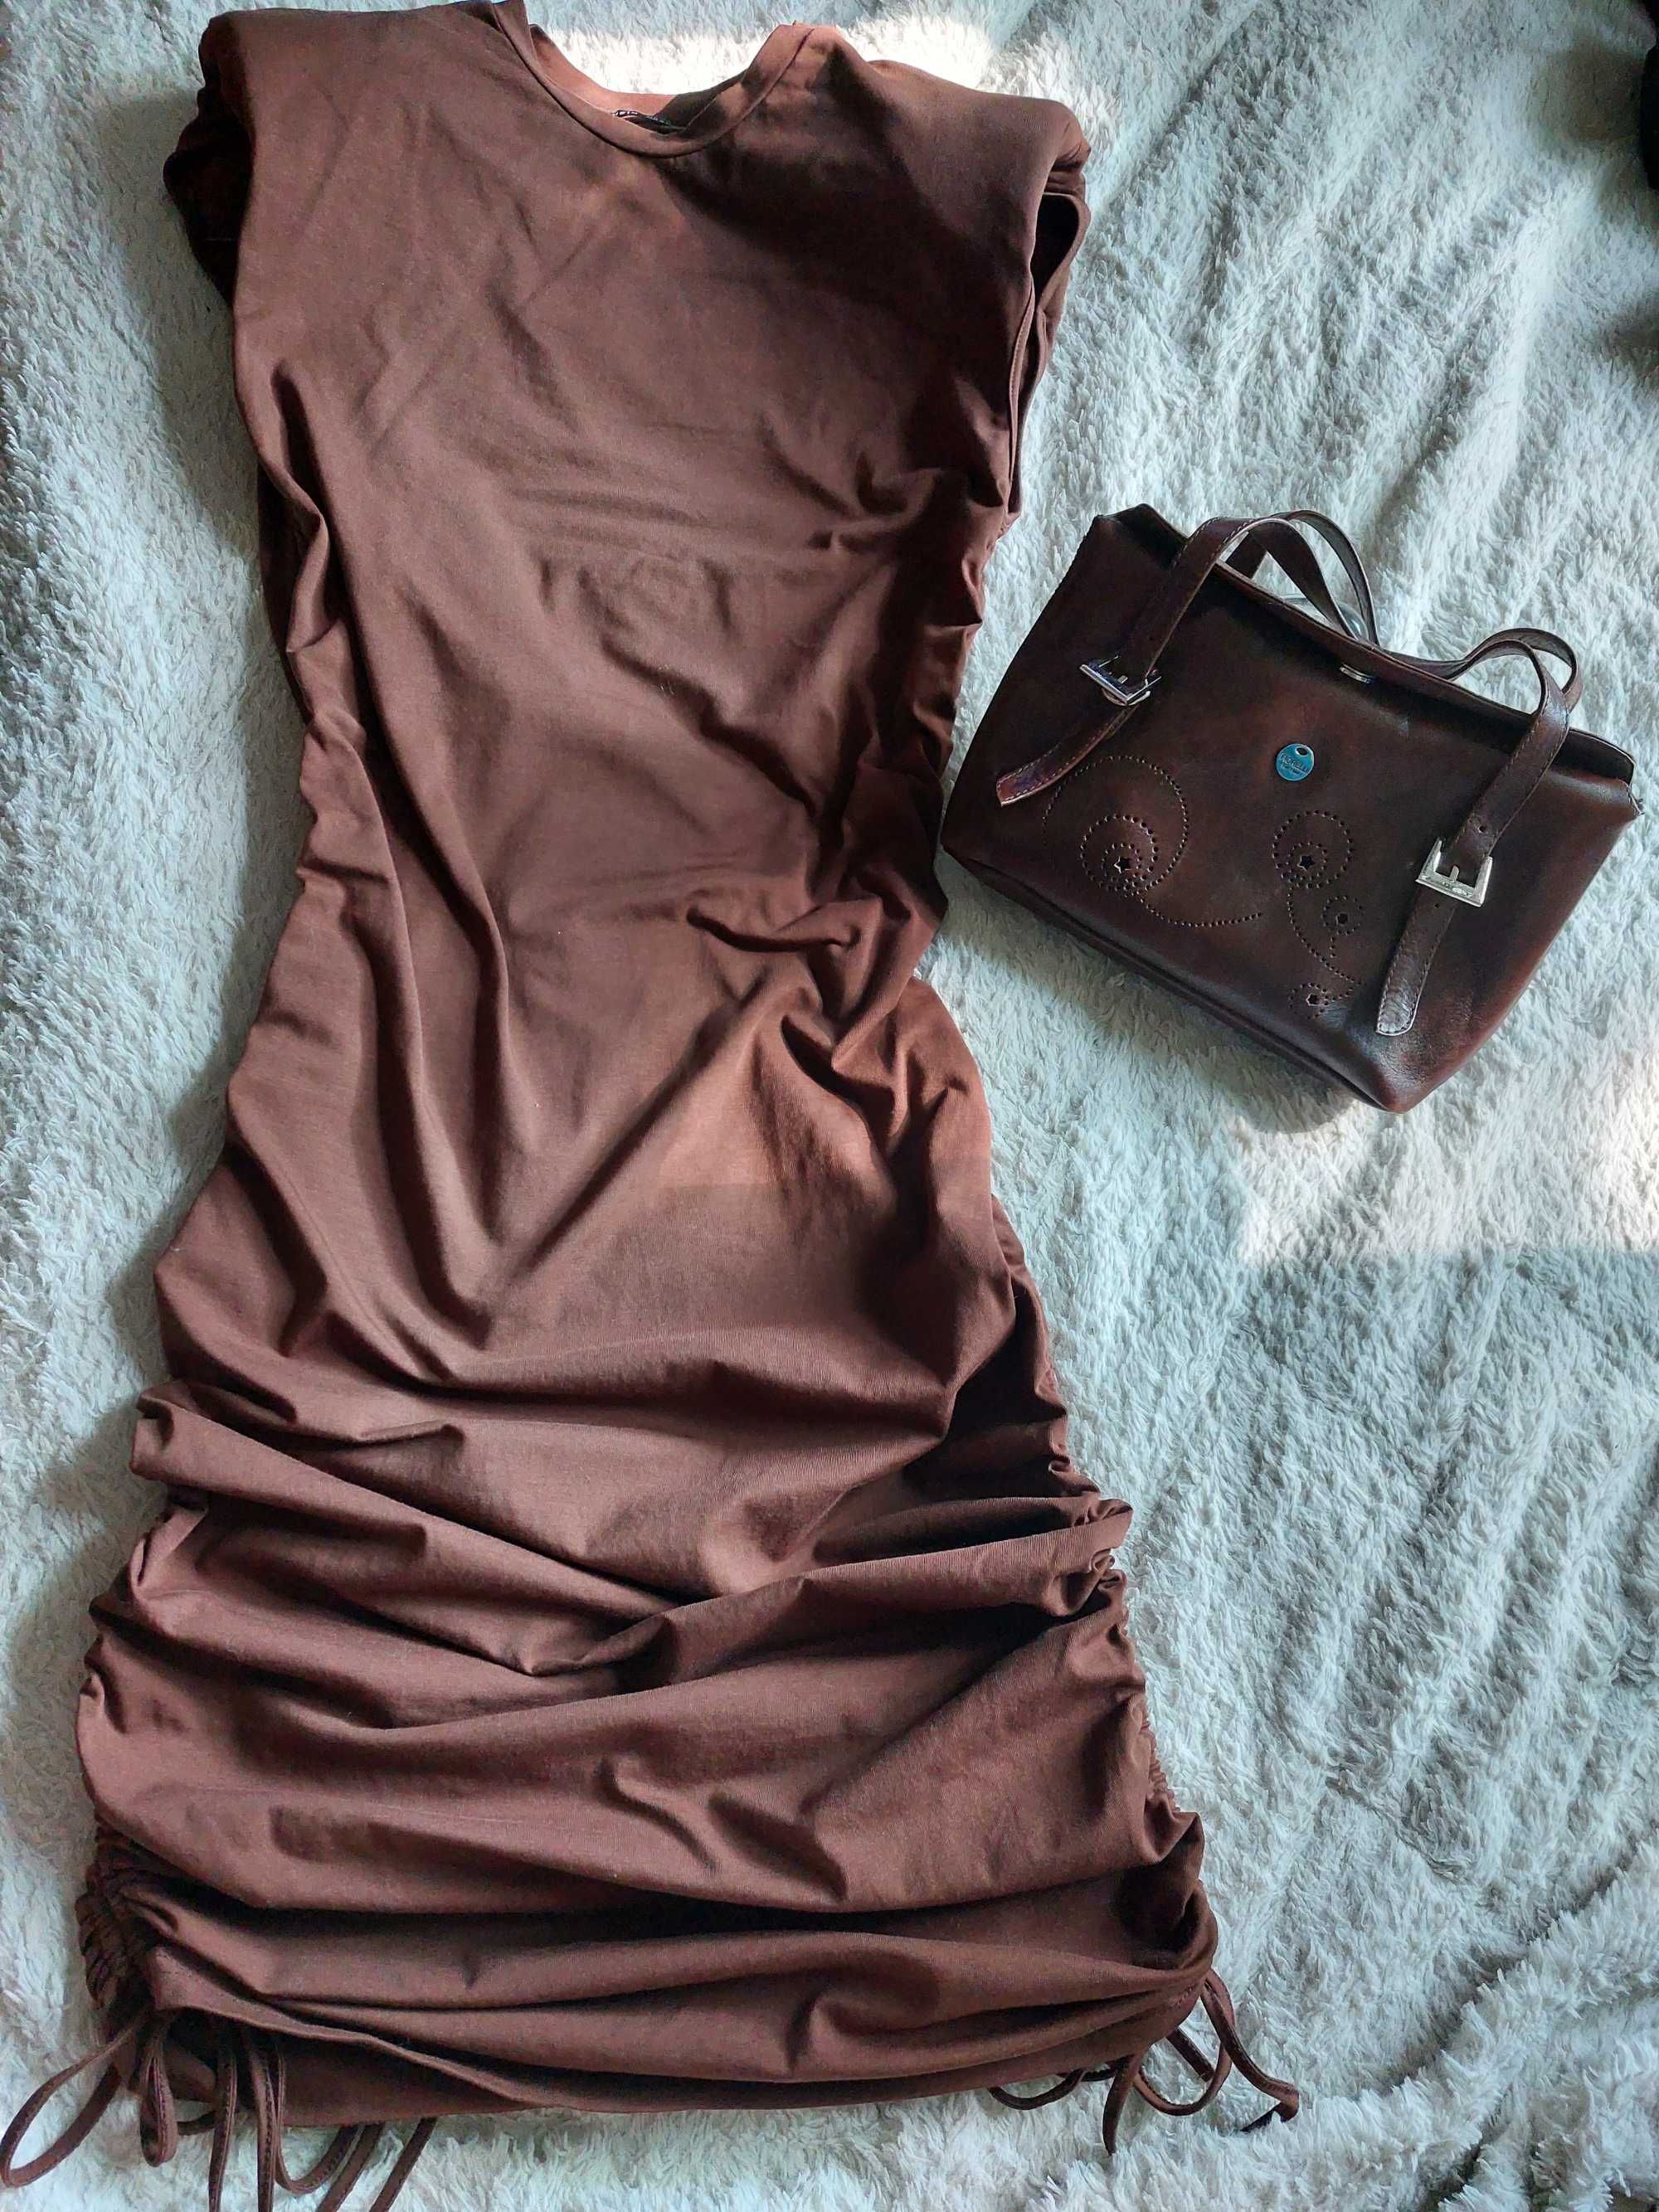 SHEIN платье с затяжками побокам 42-44р.